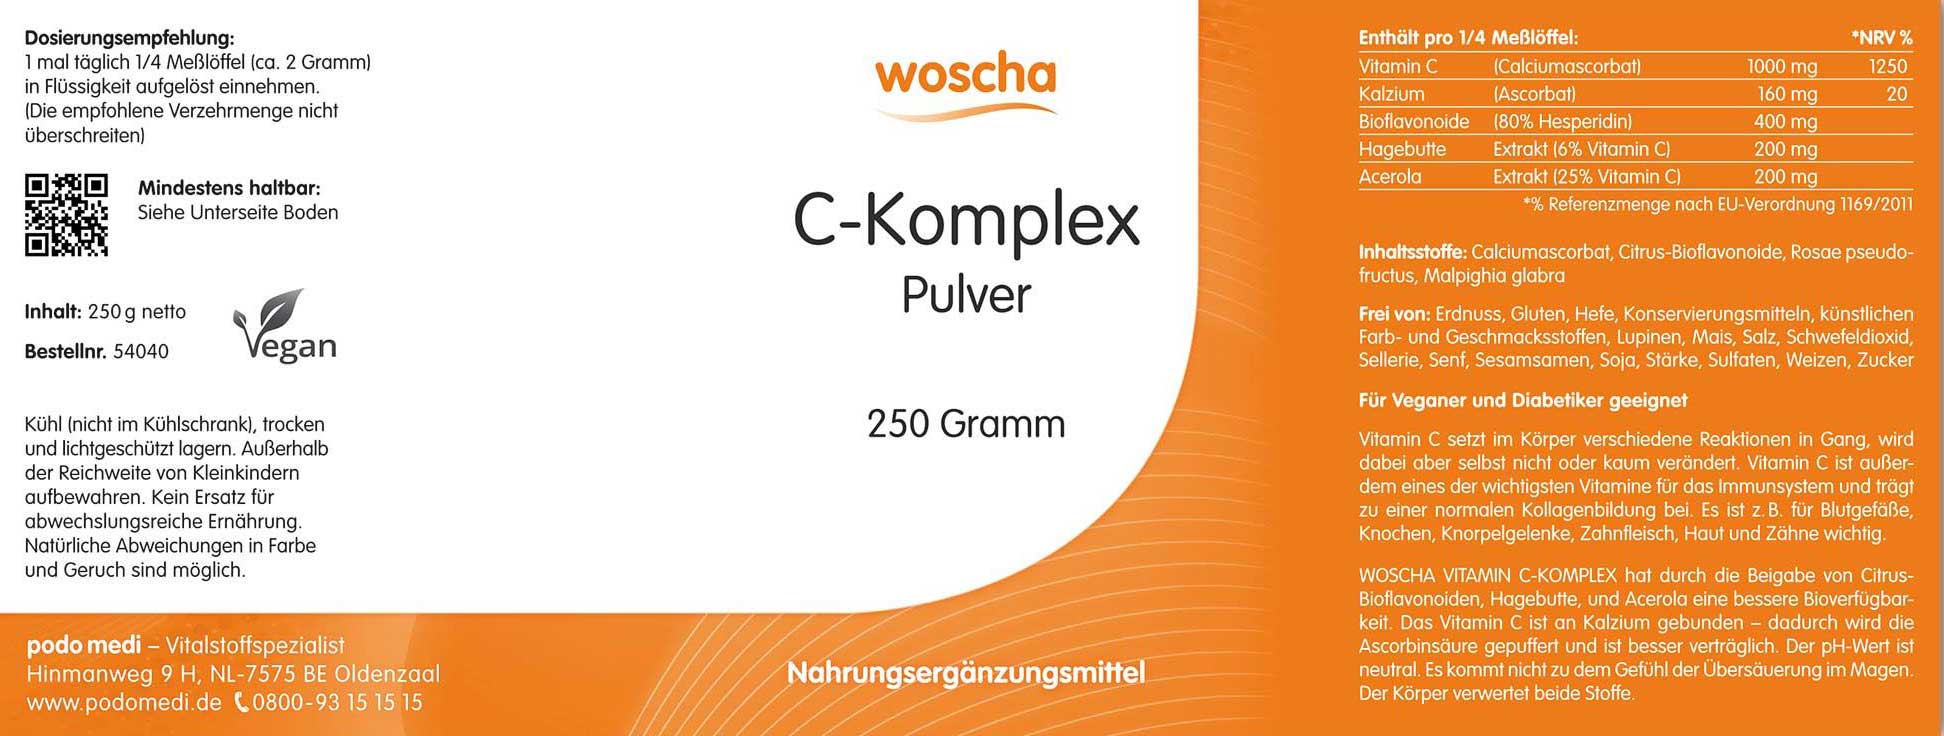 Woscha C-Komplex Pulver von podo medi beinhaltet 250 Gramm Etikett